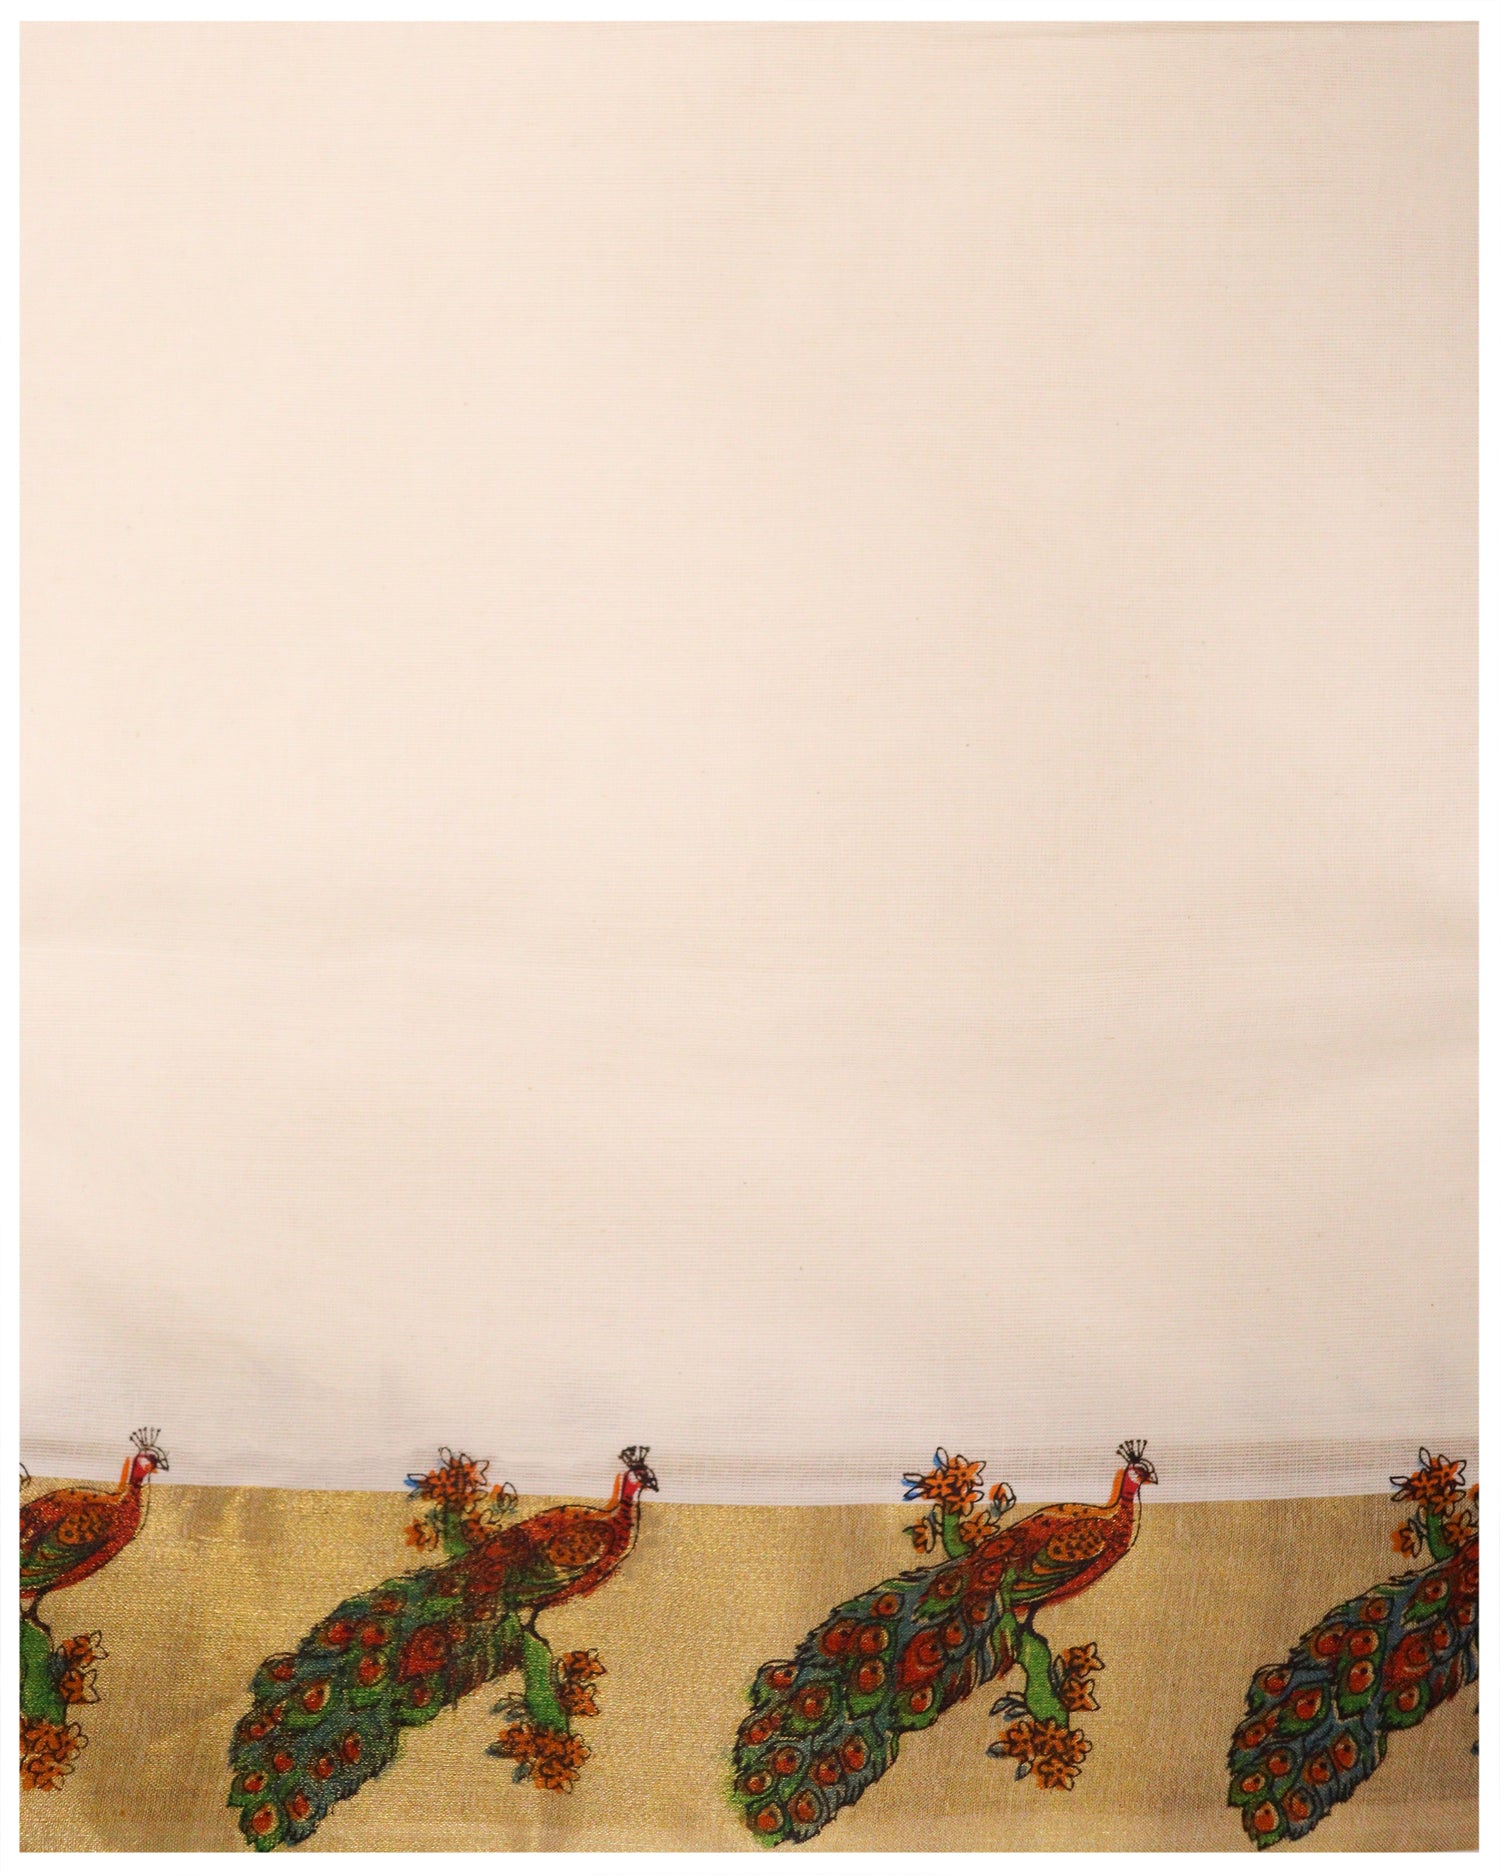 TRADITIONAL SET SAREES  traditional set saree  Set Sarees  set saree online  set saree  online set saree  ONAM SET SAREES  kerala set sarees  Golden Kara With Peacock Print Cotton Set saree  Cotton Set Saree